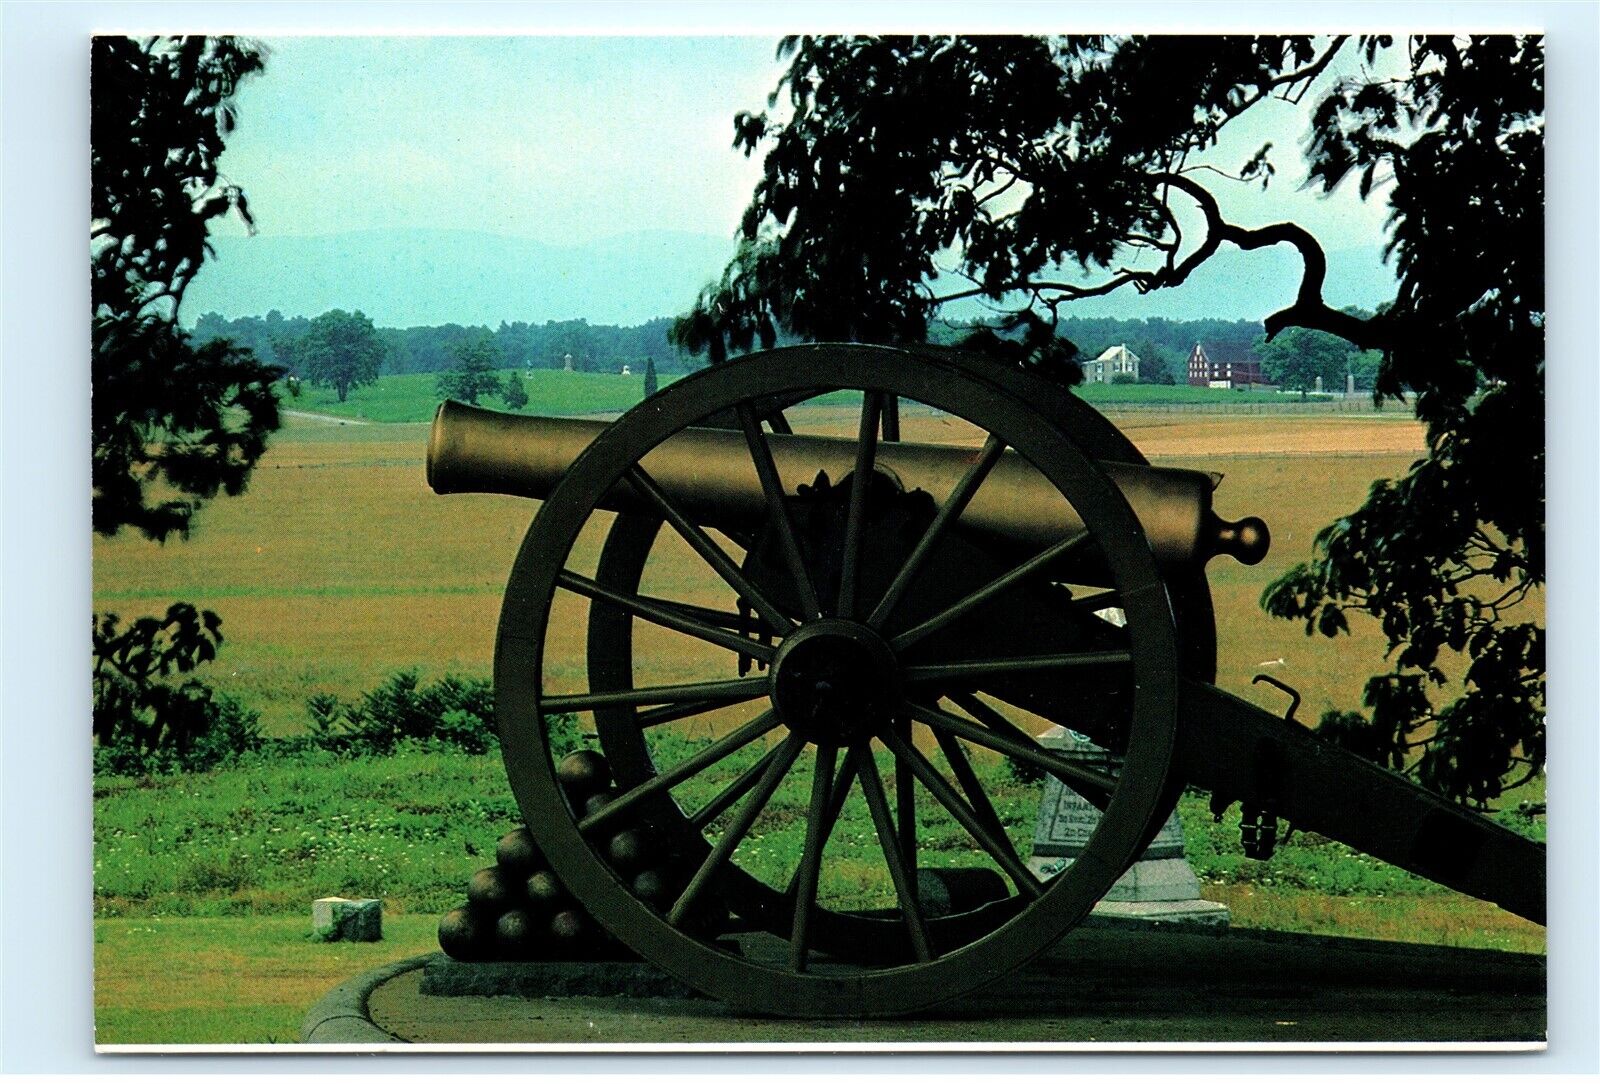 Bronze 12 pound Napoleon Cannon Gettysburg Battlefield Vintage 4x6 Postcard C58